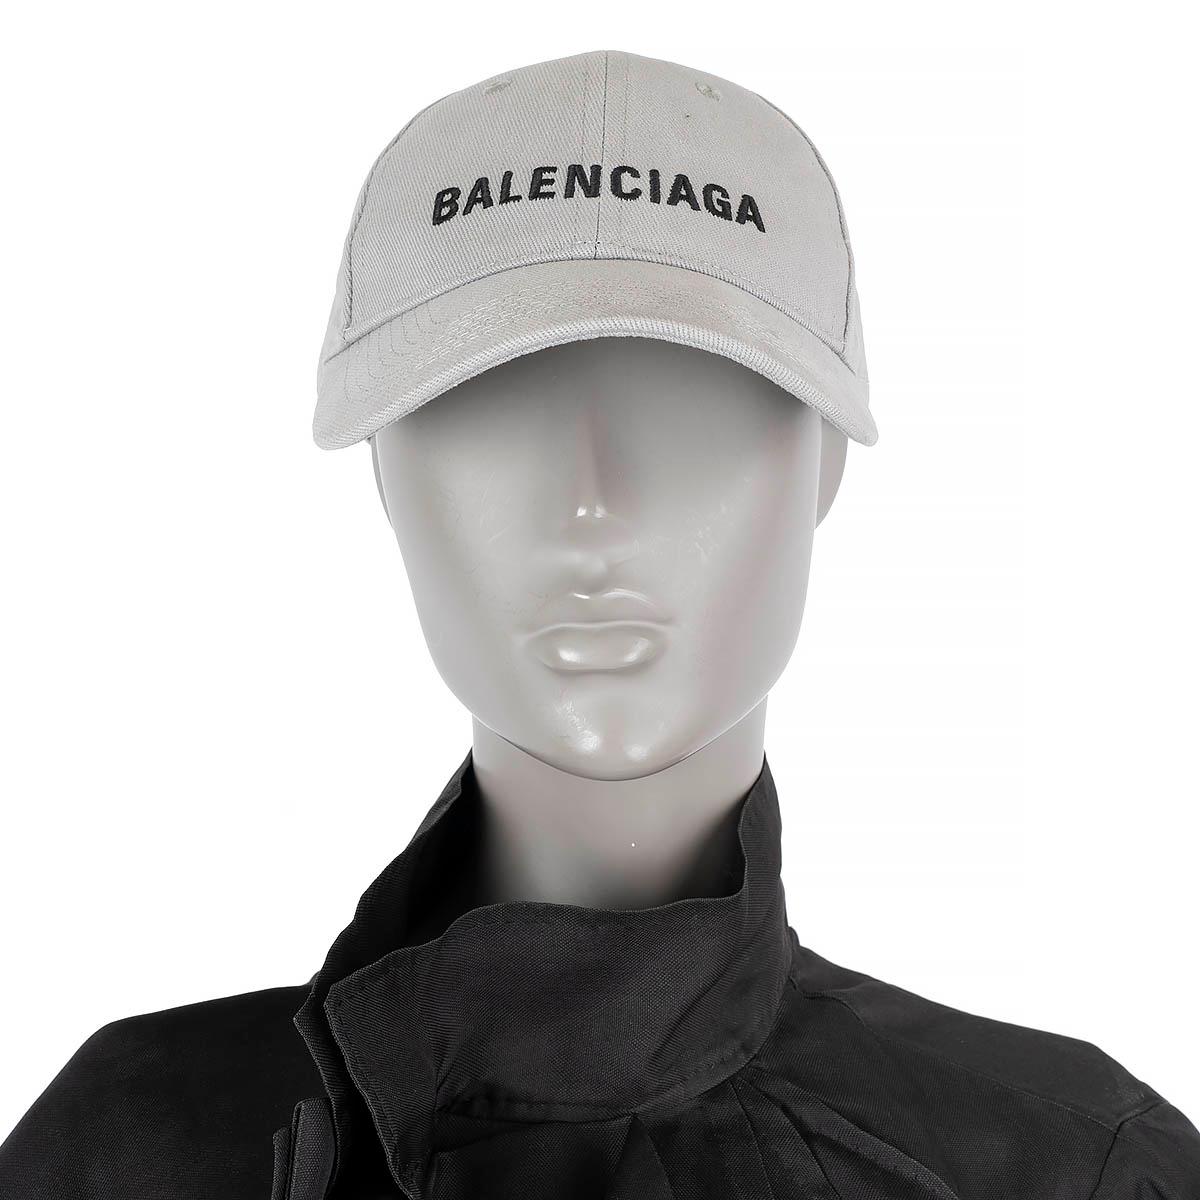 Casquette de baseball logo Balenciaga 100% authentique en coton gris clair. A été porté et est en excellent état.

Mesures
Taille de l'étiquette	L/59
Circonférence intérieure	56cm (21.8in)

Toutes nos annonces comprennent uniquement l'article listé,